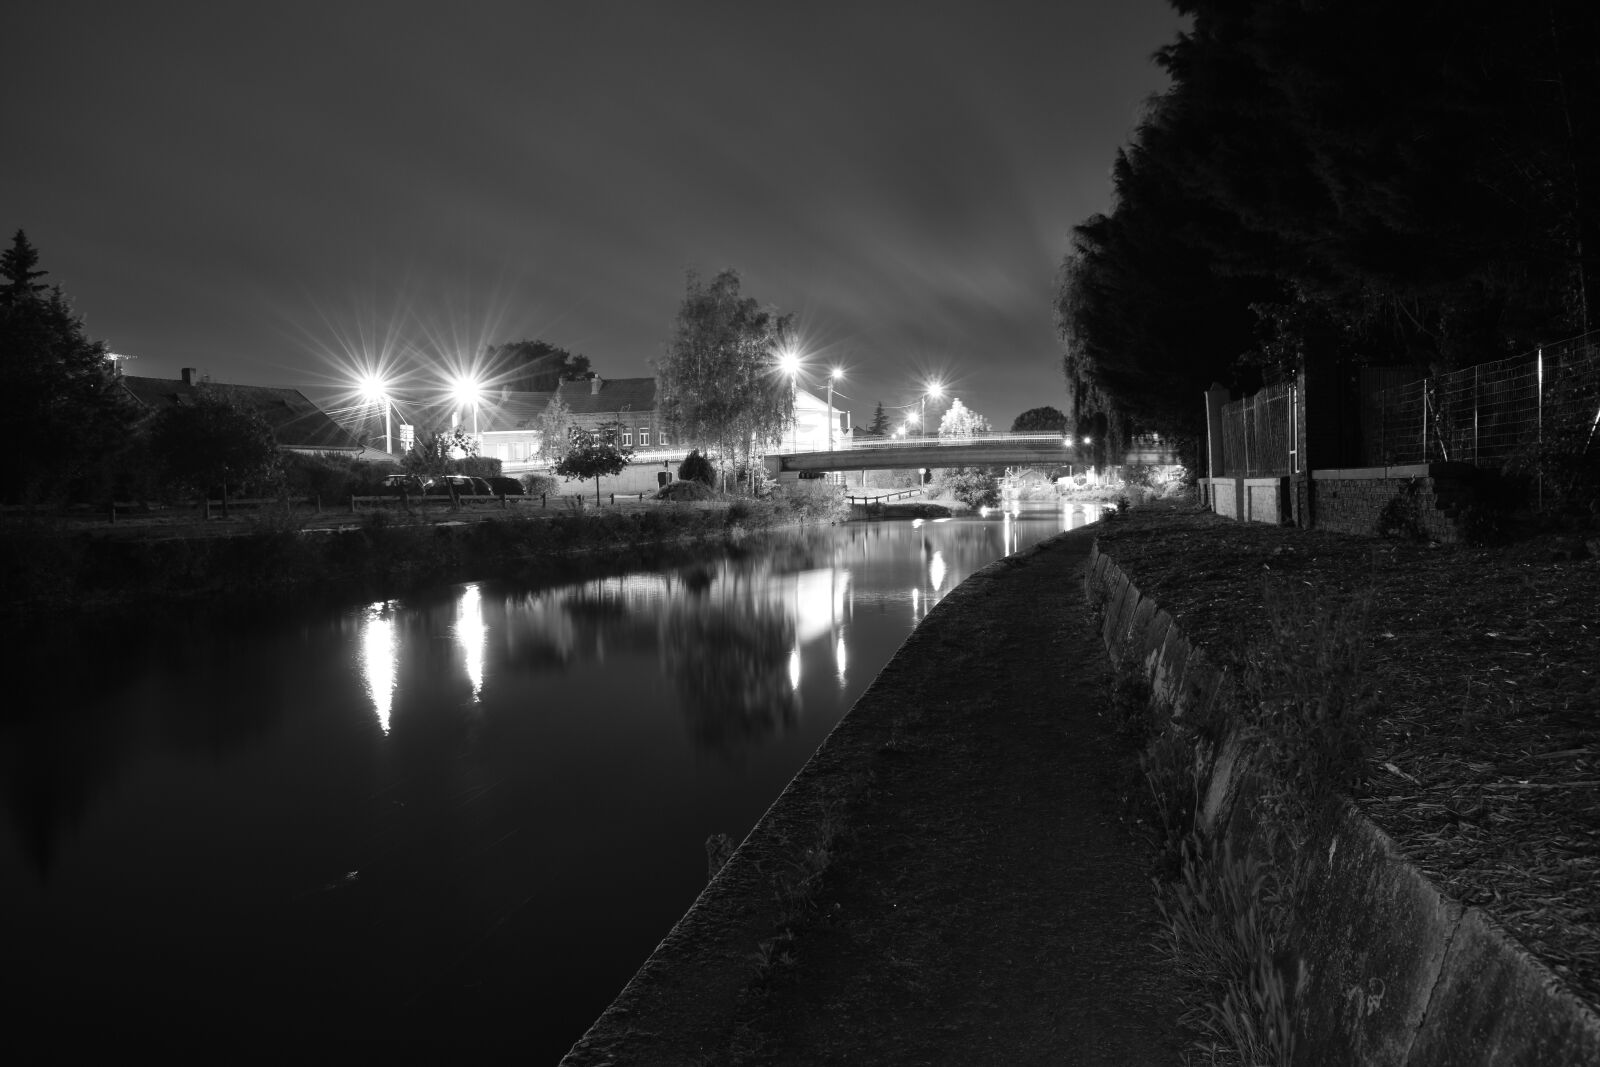 Nikon D3300 sample photo. Nuit, noir et blanc photography